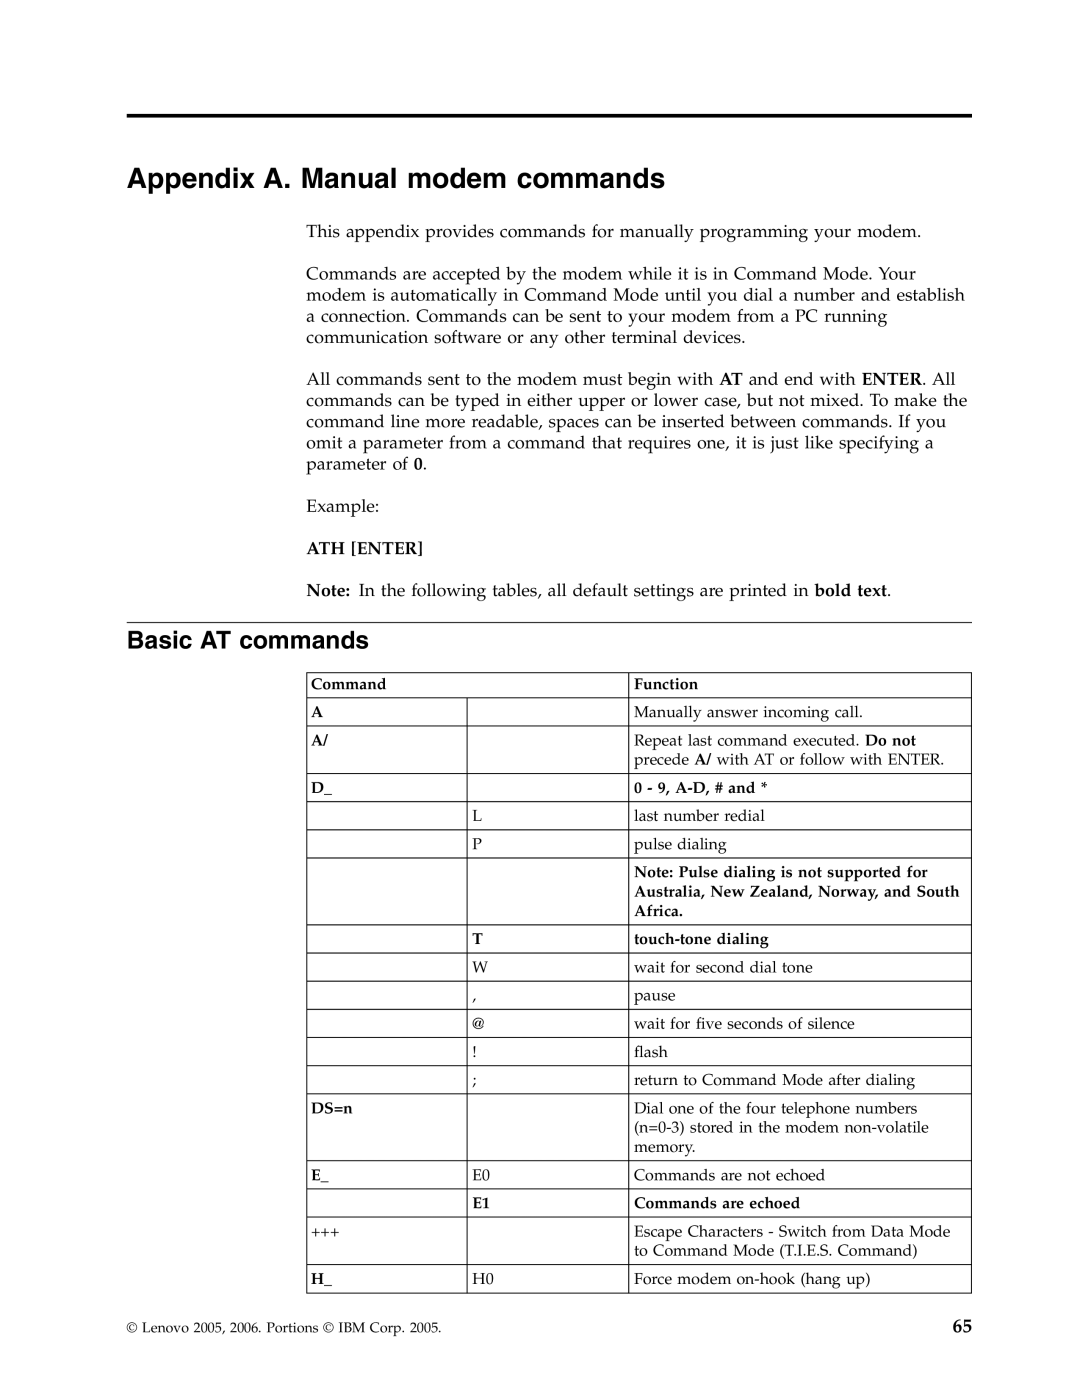 Lenovo 8805, 8814, 8810, 8801, 8793, 8797, 8011 manual Appendix A. Manual modem commands, Basic AT commands 